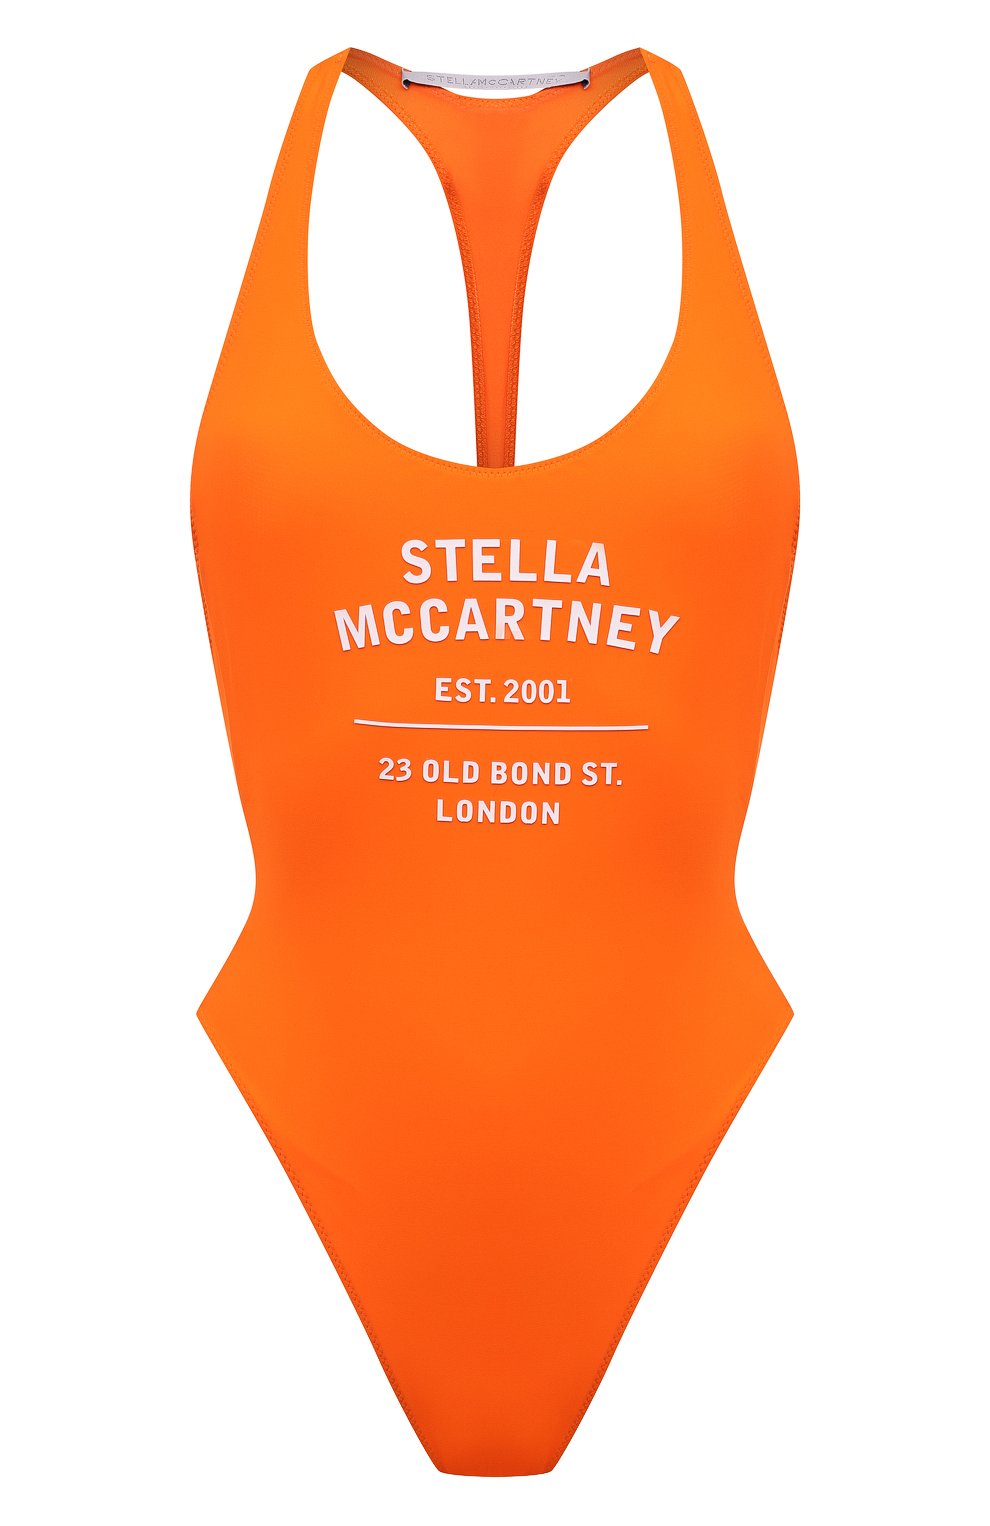 Слитные купальники Stella McCartney, Слитный купальник Stella McCartney, Италия, Оранжевый, Полиамид: 78%; Эластан (Полиуретан): 22%;, 13033187  - купить